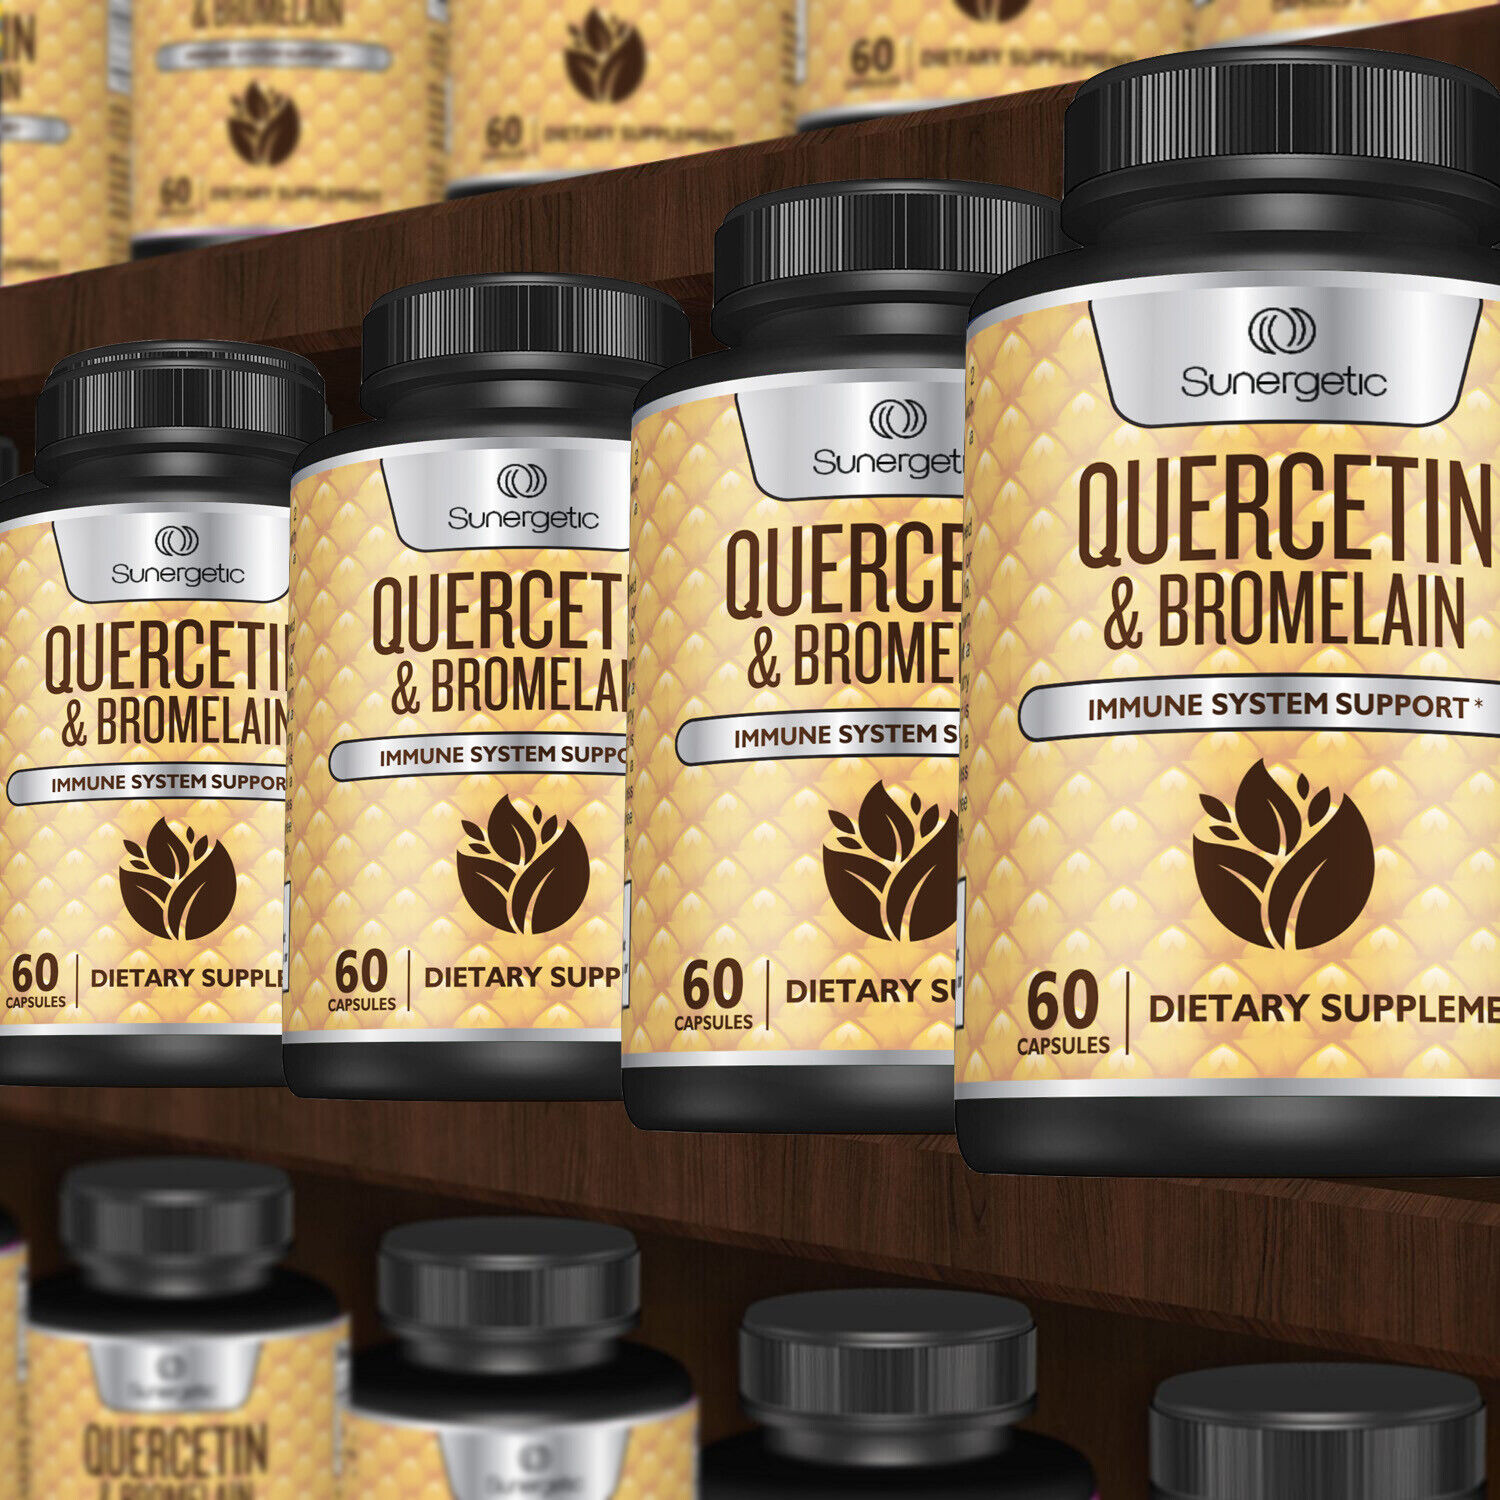 Sunergetic Premium Quercetin & Bromelain Supplement - 60 Capsules